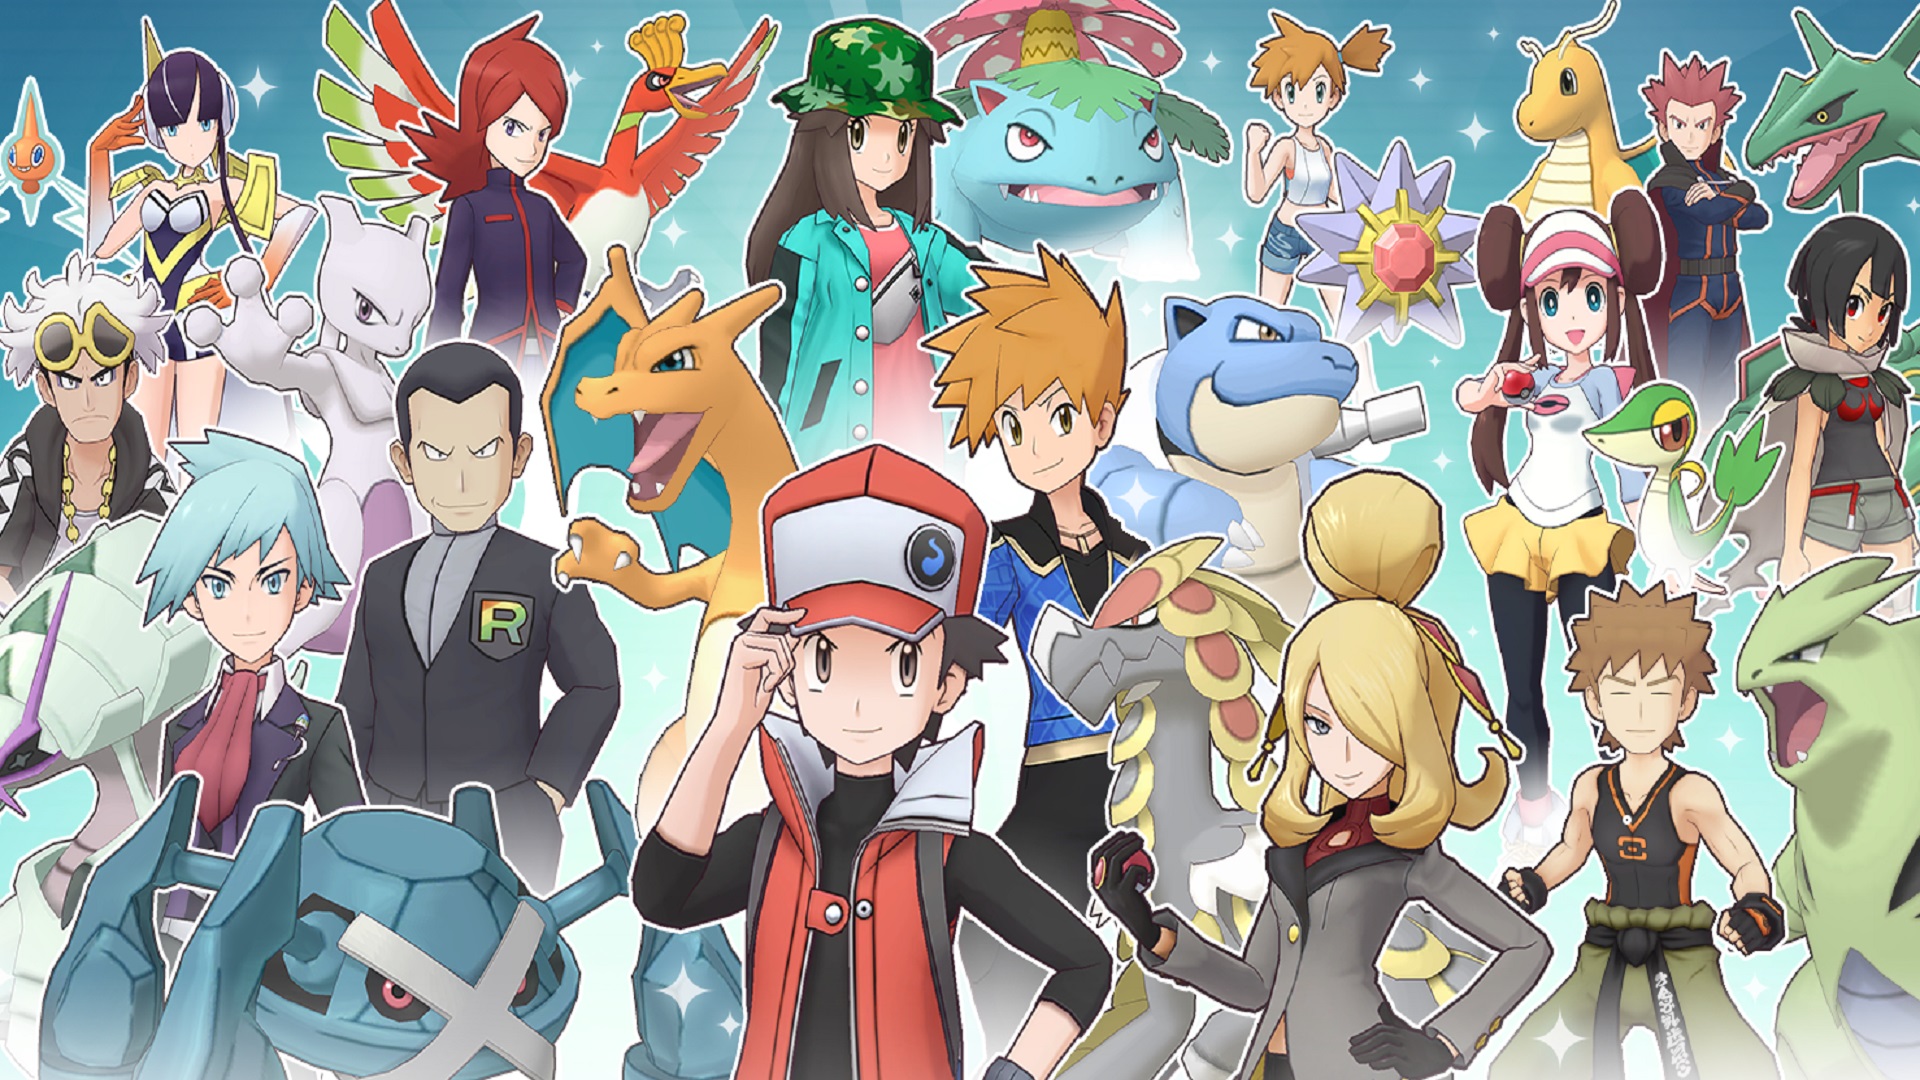 Dawn Legendary Pokémon Team, All 6 Best Pokémon Of Dawn